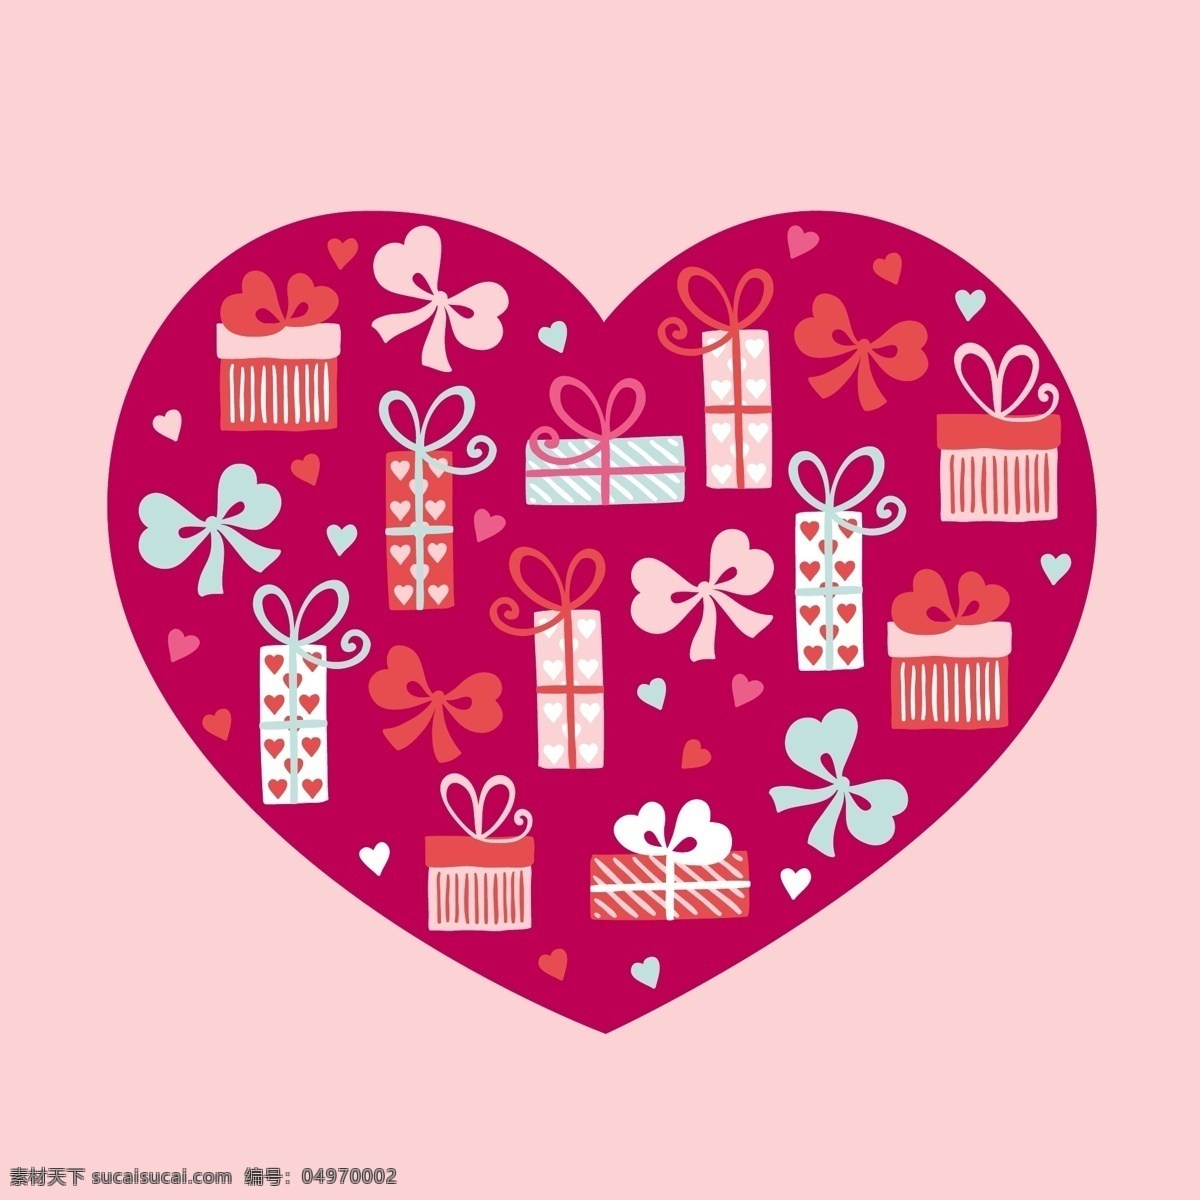 礼物 爱心 卡通 矢量 粉色 礼盒 平面素材 设计素材 矢量素材